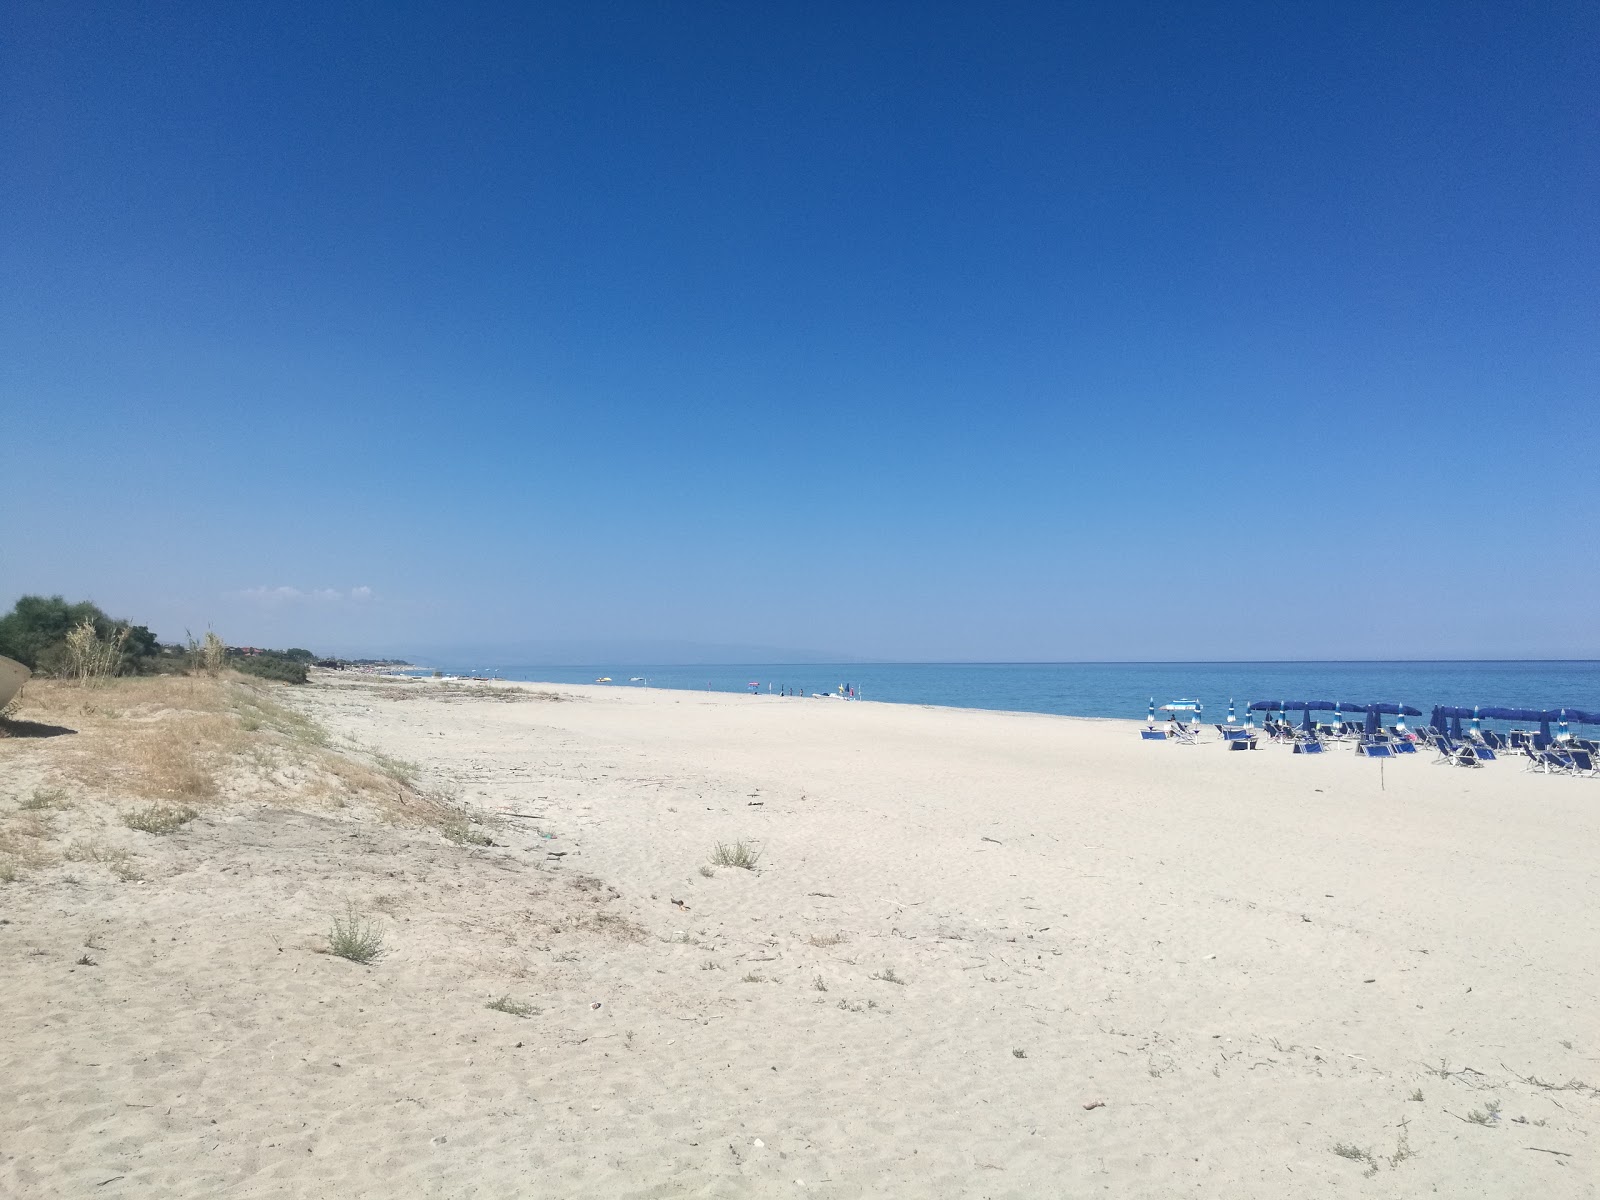 Photo de Campomarzio beach - endroit populaire parmi les connaisseurs de la détente